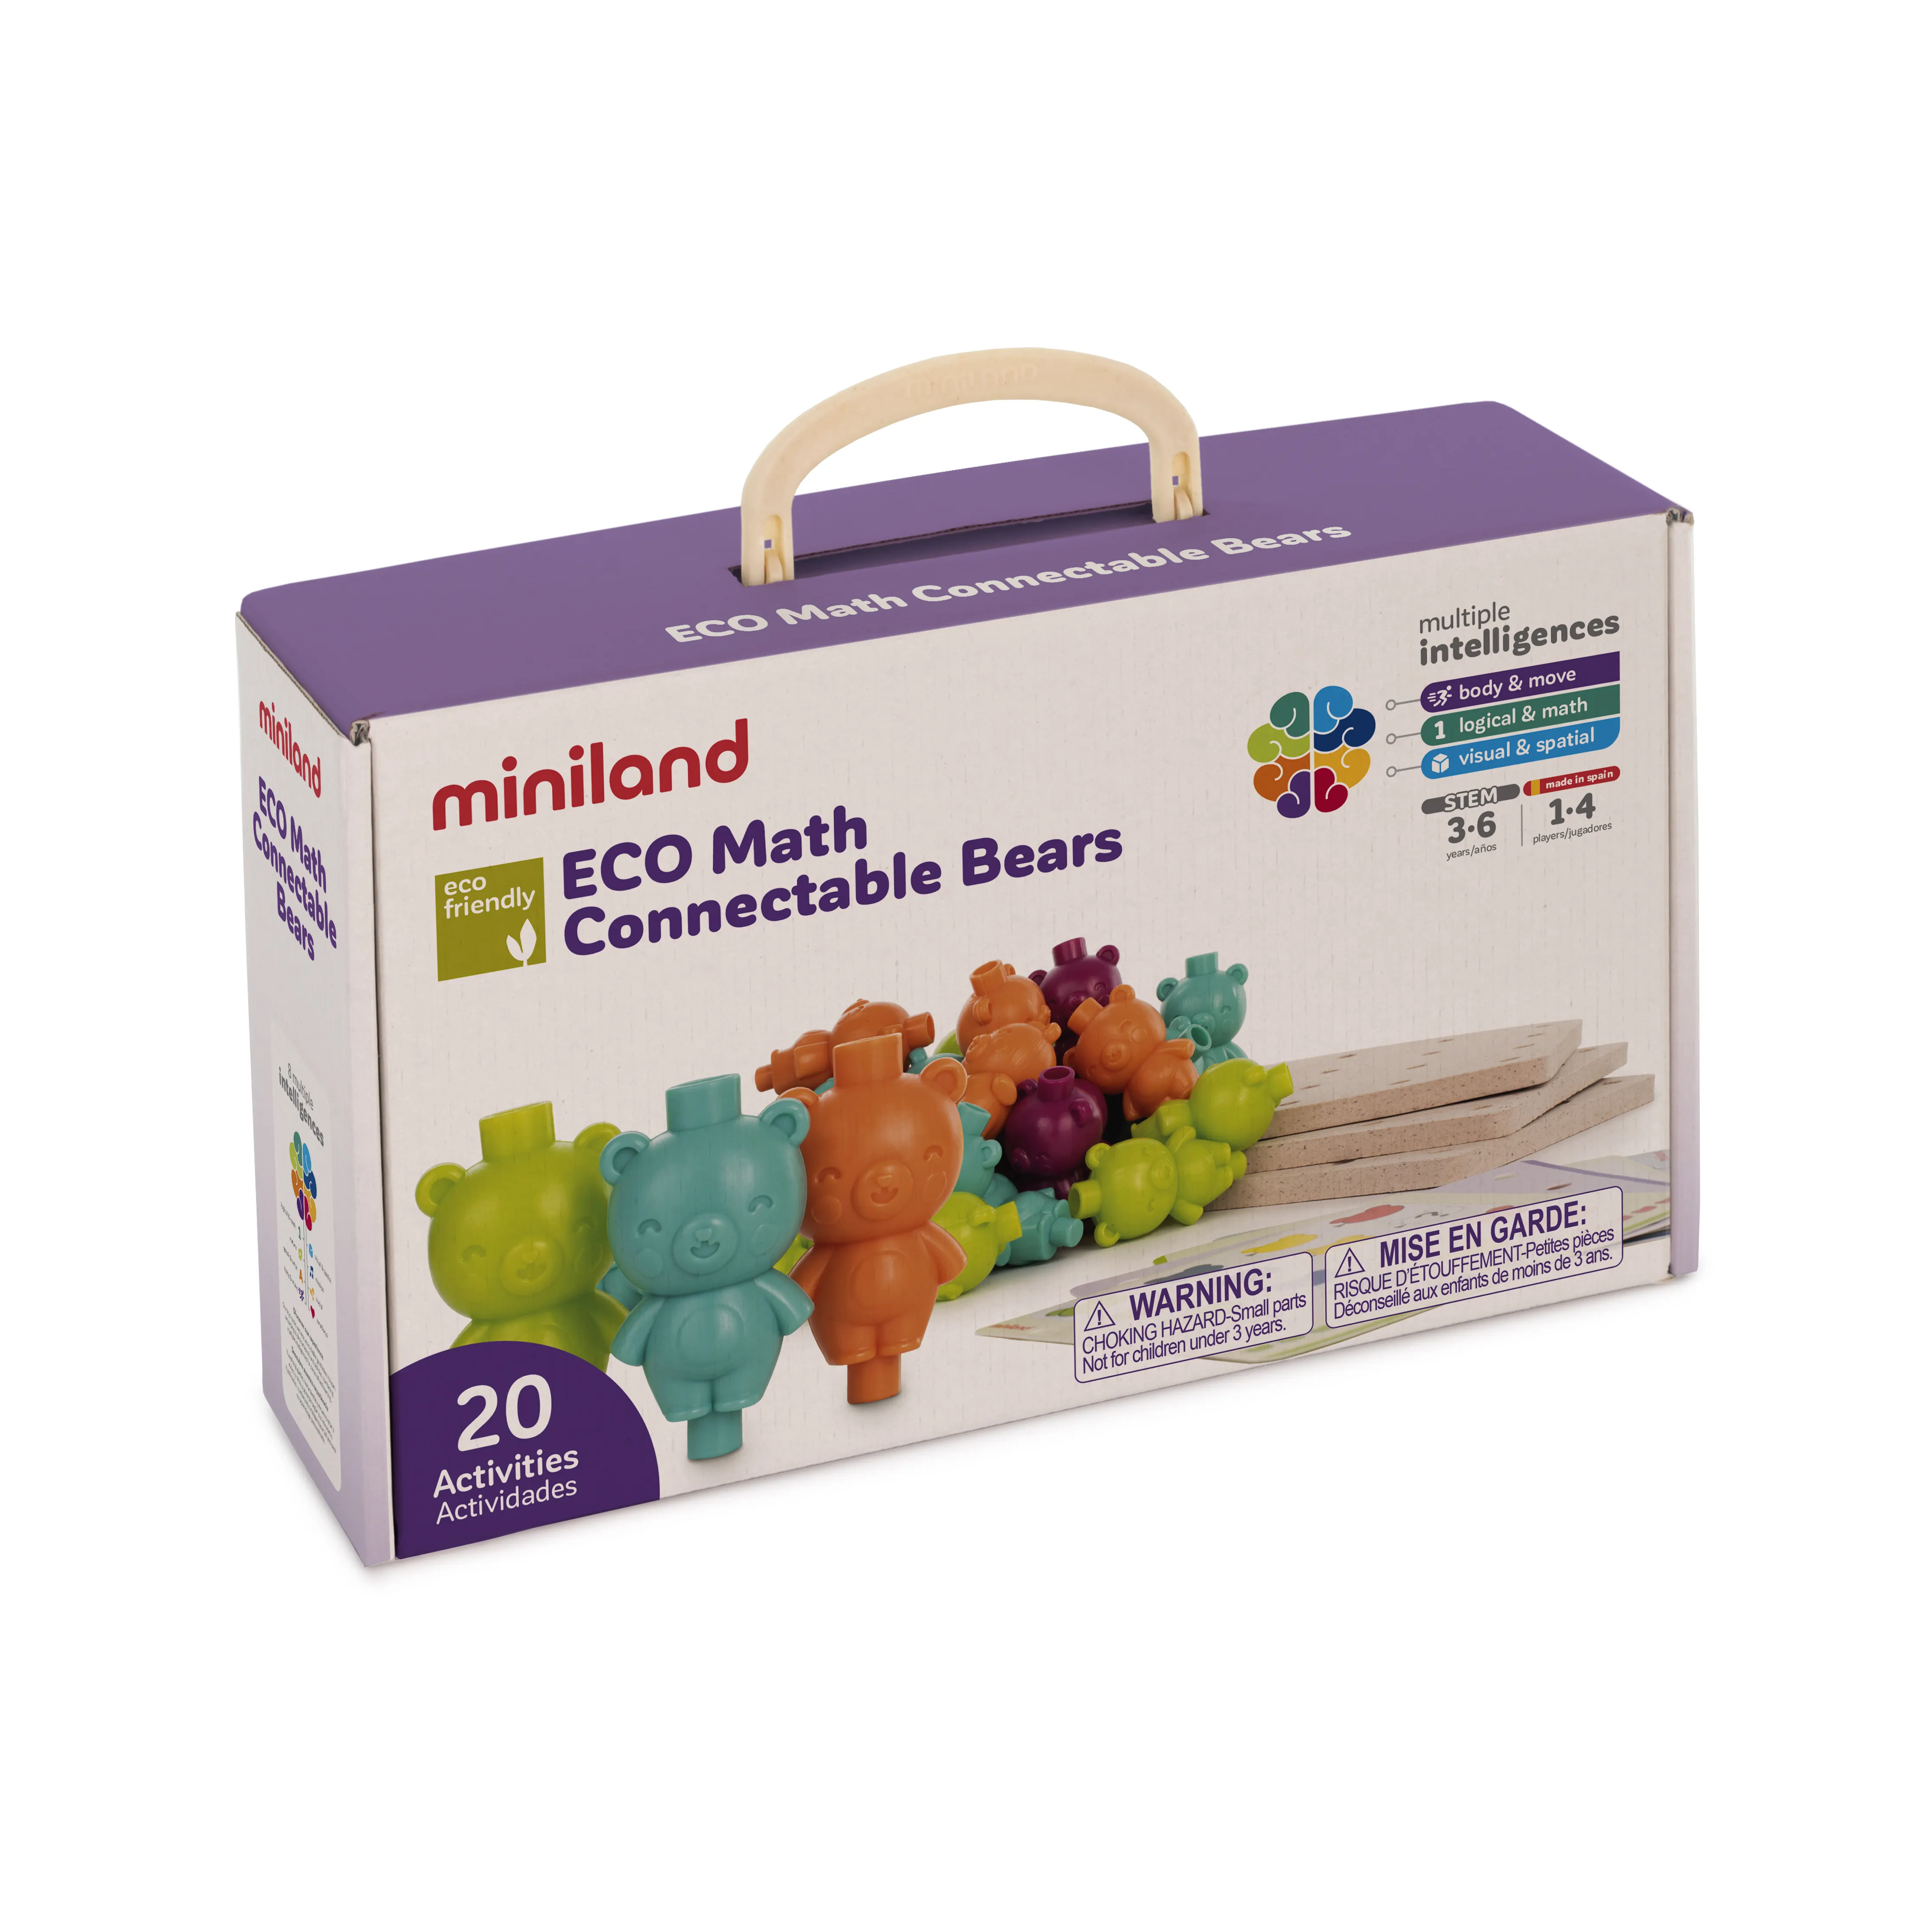 Miniland ECO matematika terhubung beruang (20 buah) 4 cm mainan kualitas tinggi Spanyol untuk pengembangan matematika anak